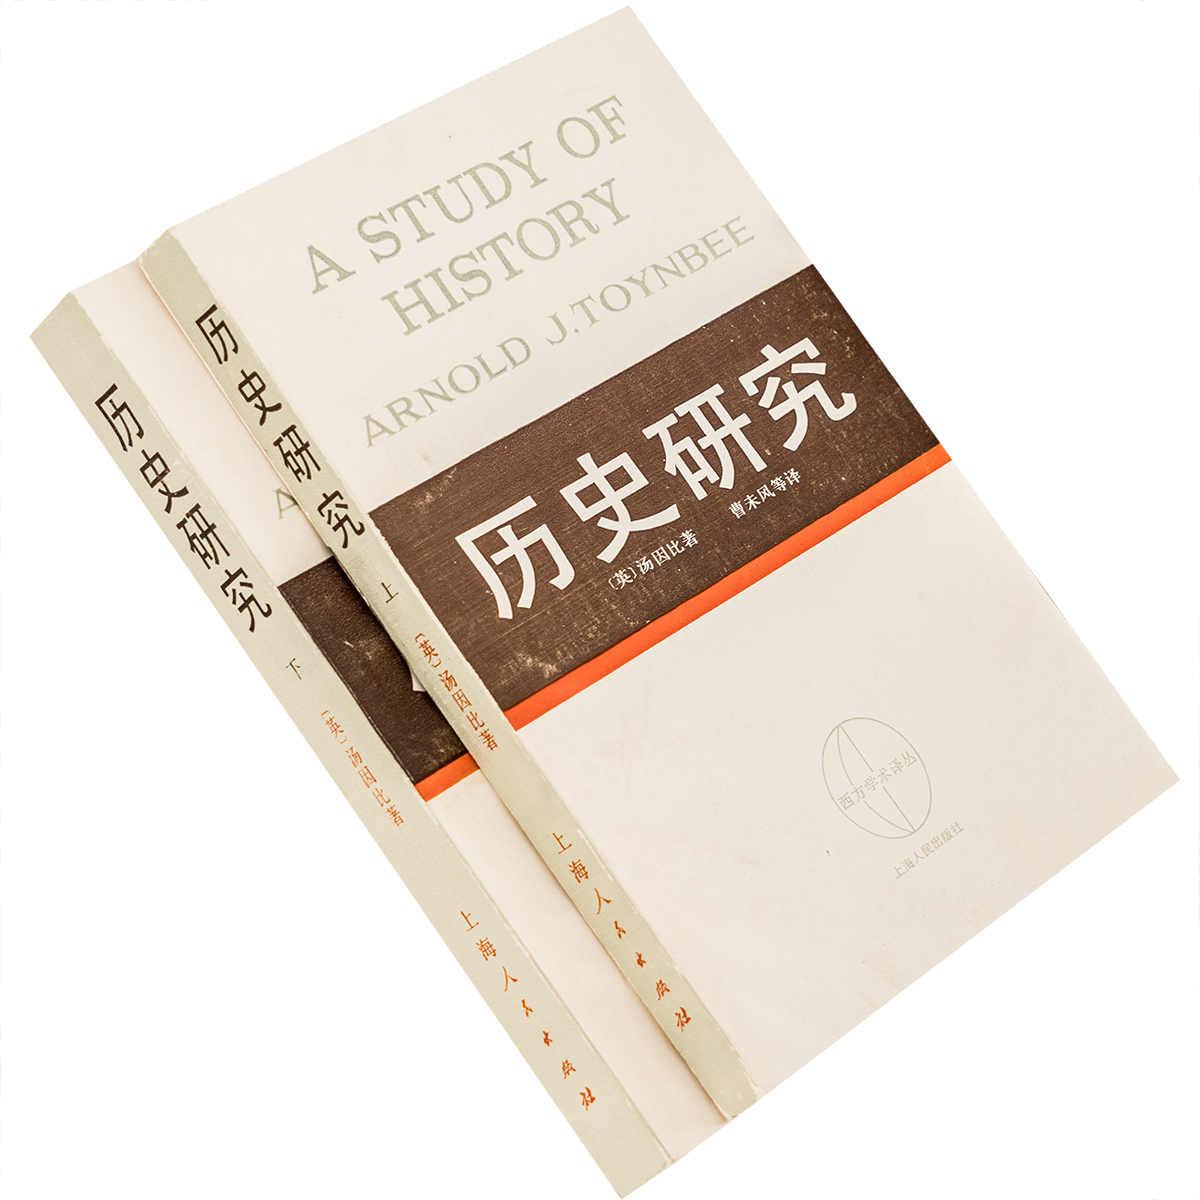 历史研究 上下全本 汤因比 西方学术译丛 上海人民出版社 正版书籍老版